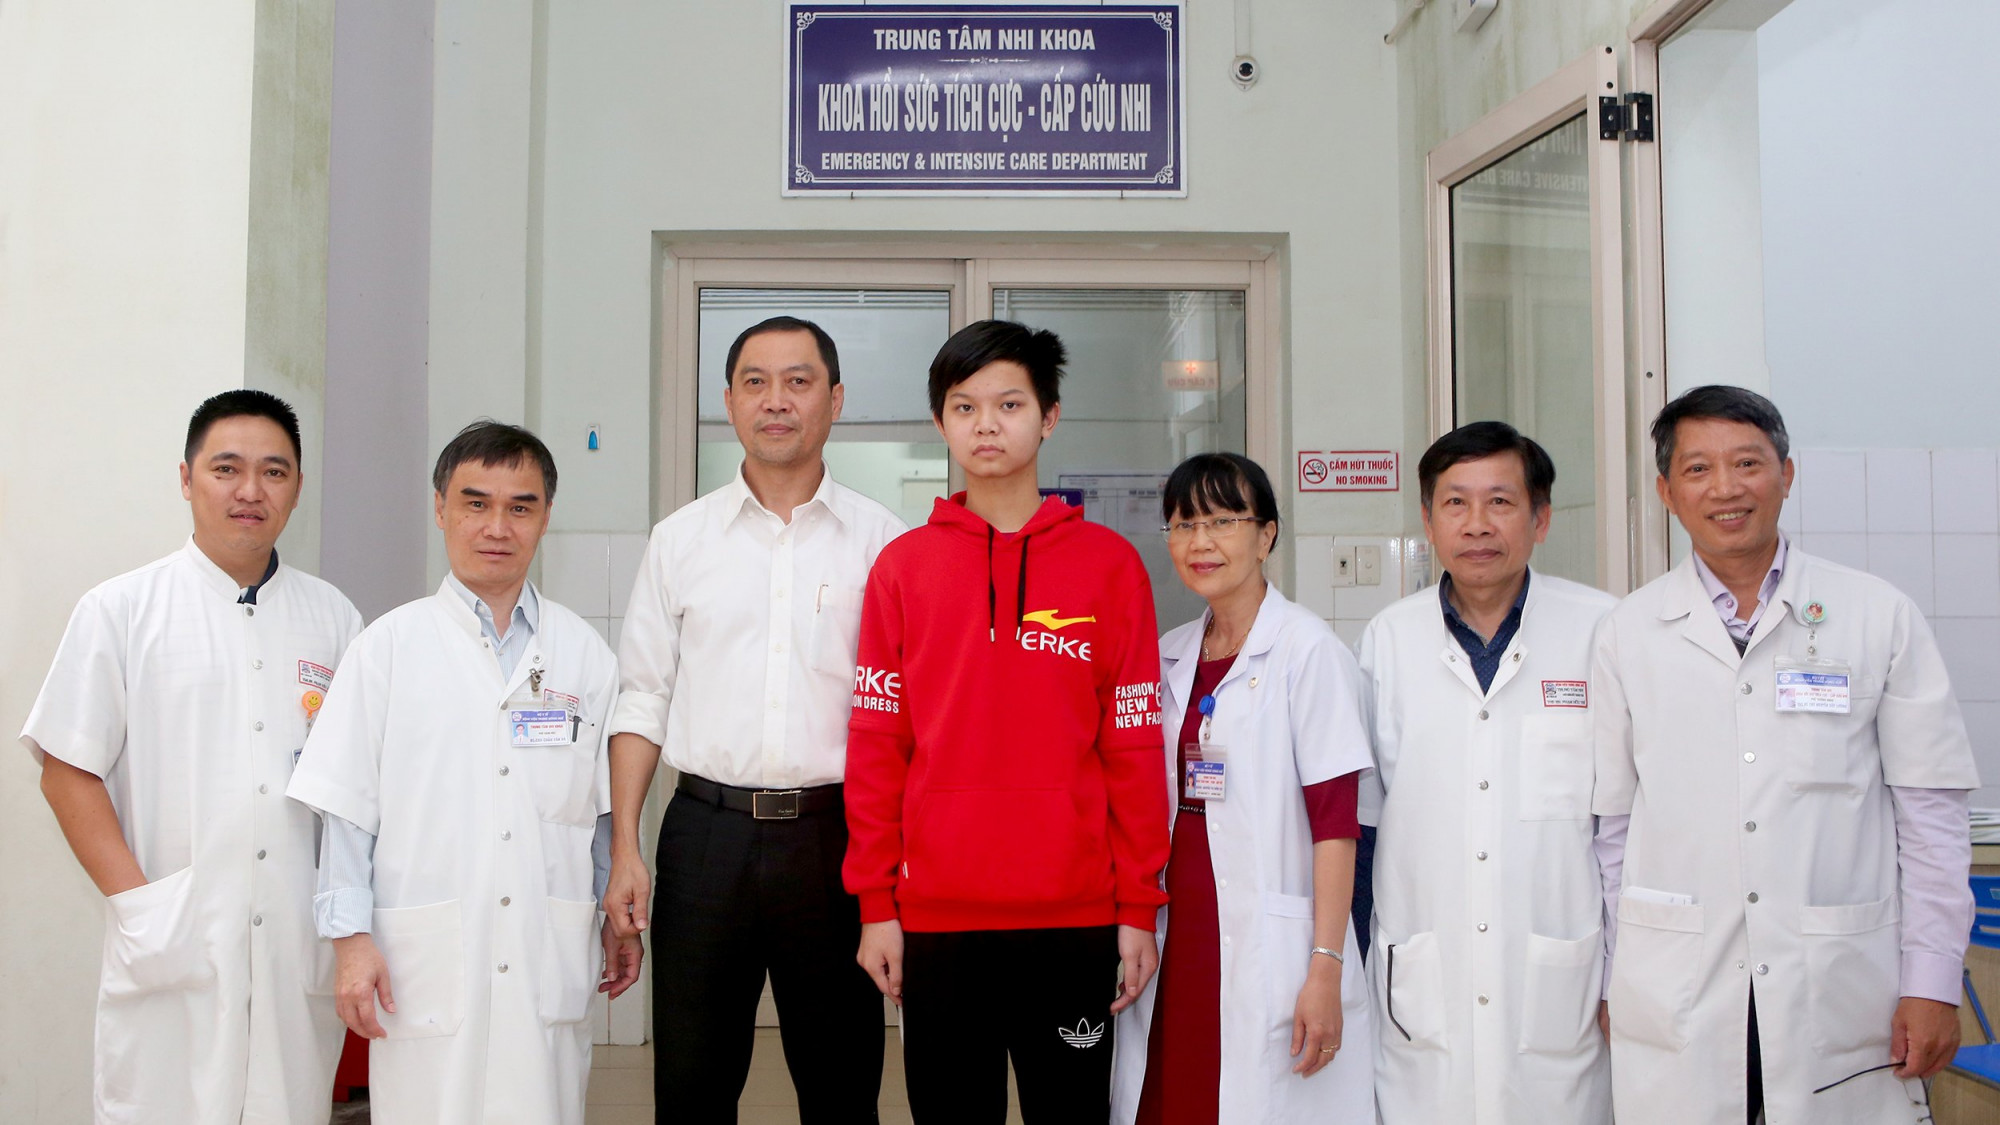 Các bác sĩ Trung tâm Nhi khoa, Bệnh viện Trung ương chụp ảnh kỷ niệm cùng cháu Trần Gia H, trước giờ H, xuất viện